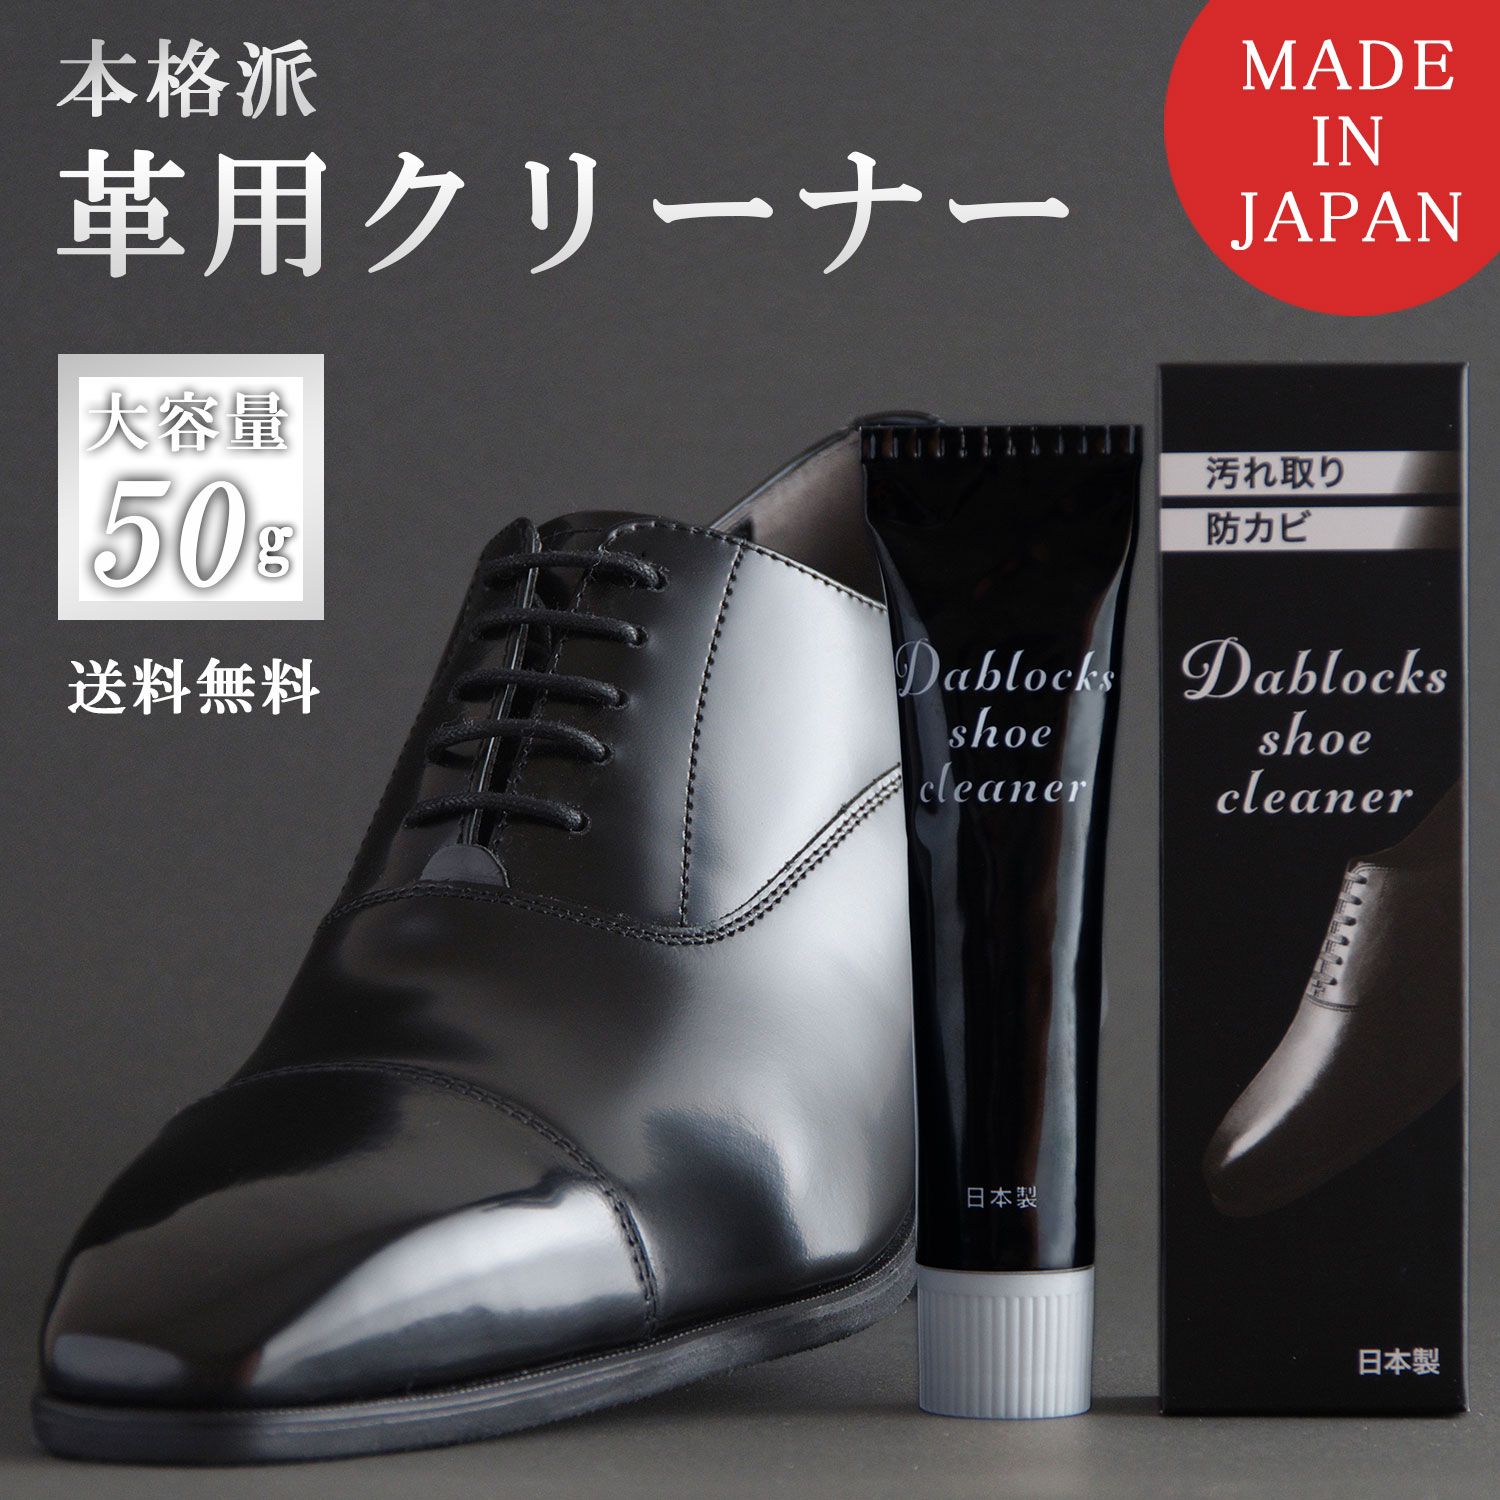 DABLOCKS 革靴クリーナー 革製品 汚れ落とし 50g 日本製